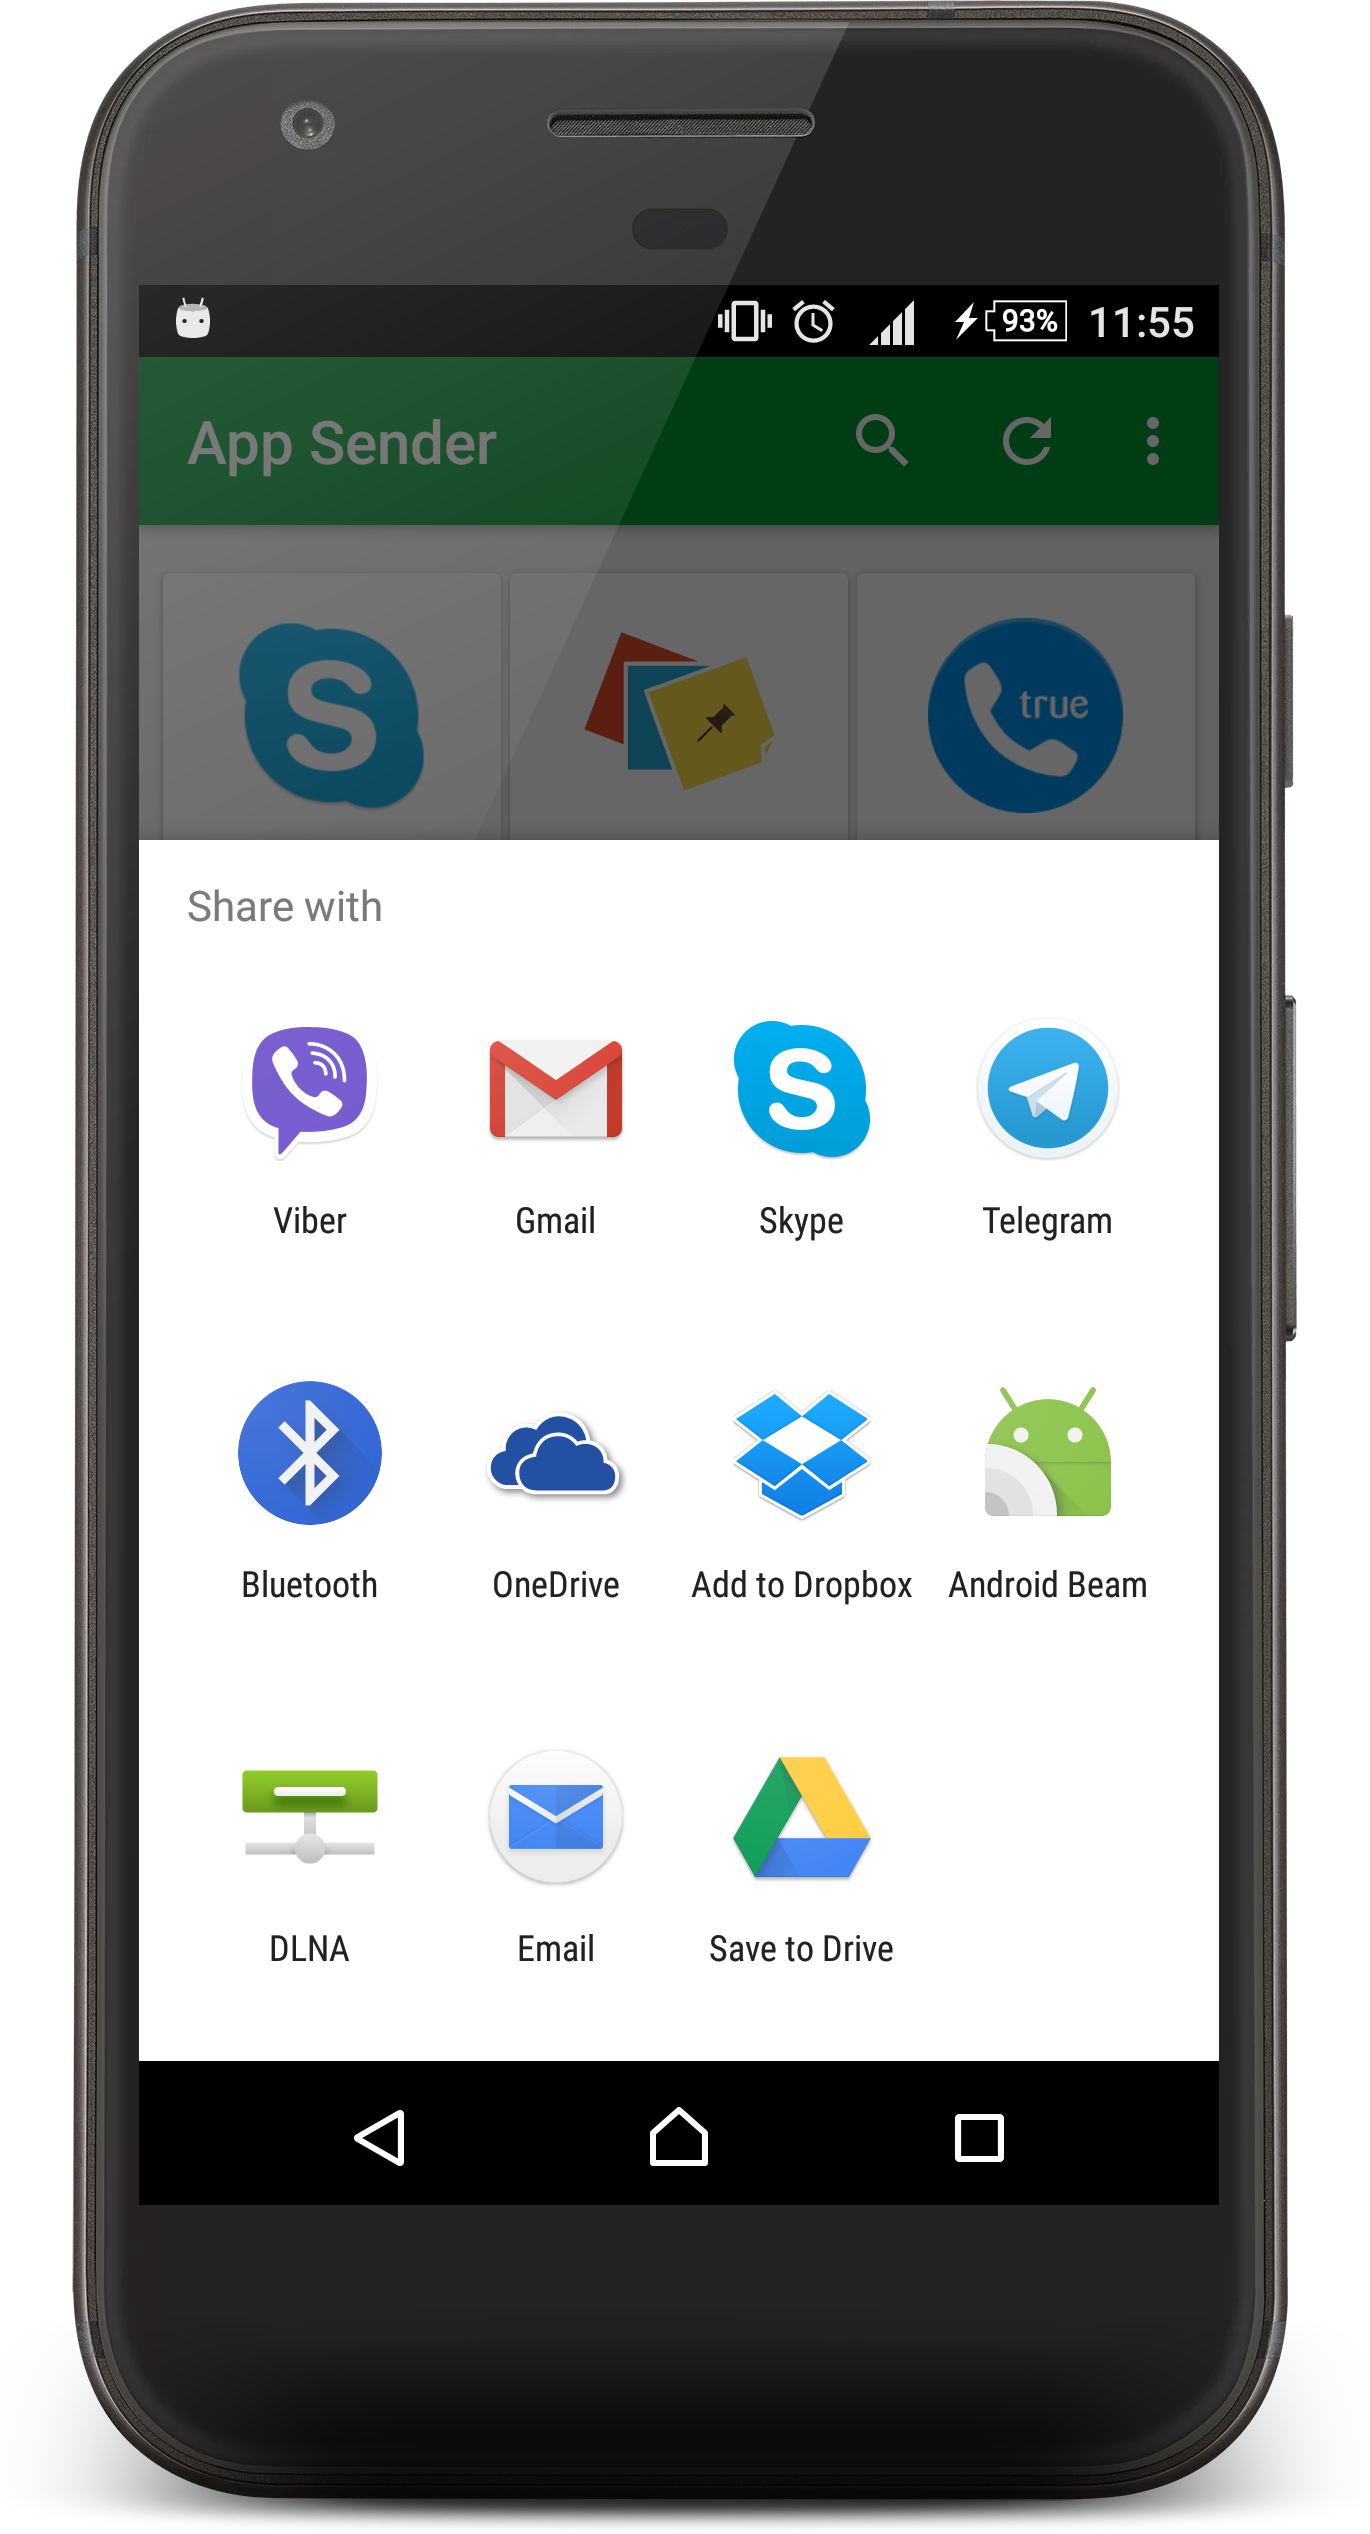 App Share Share Apps With Bluetooth Apk 1 2 6 Download For Android Download App Share Share Apps With Bluetooth Apk Latest Version Apkfab Com